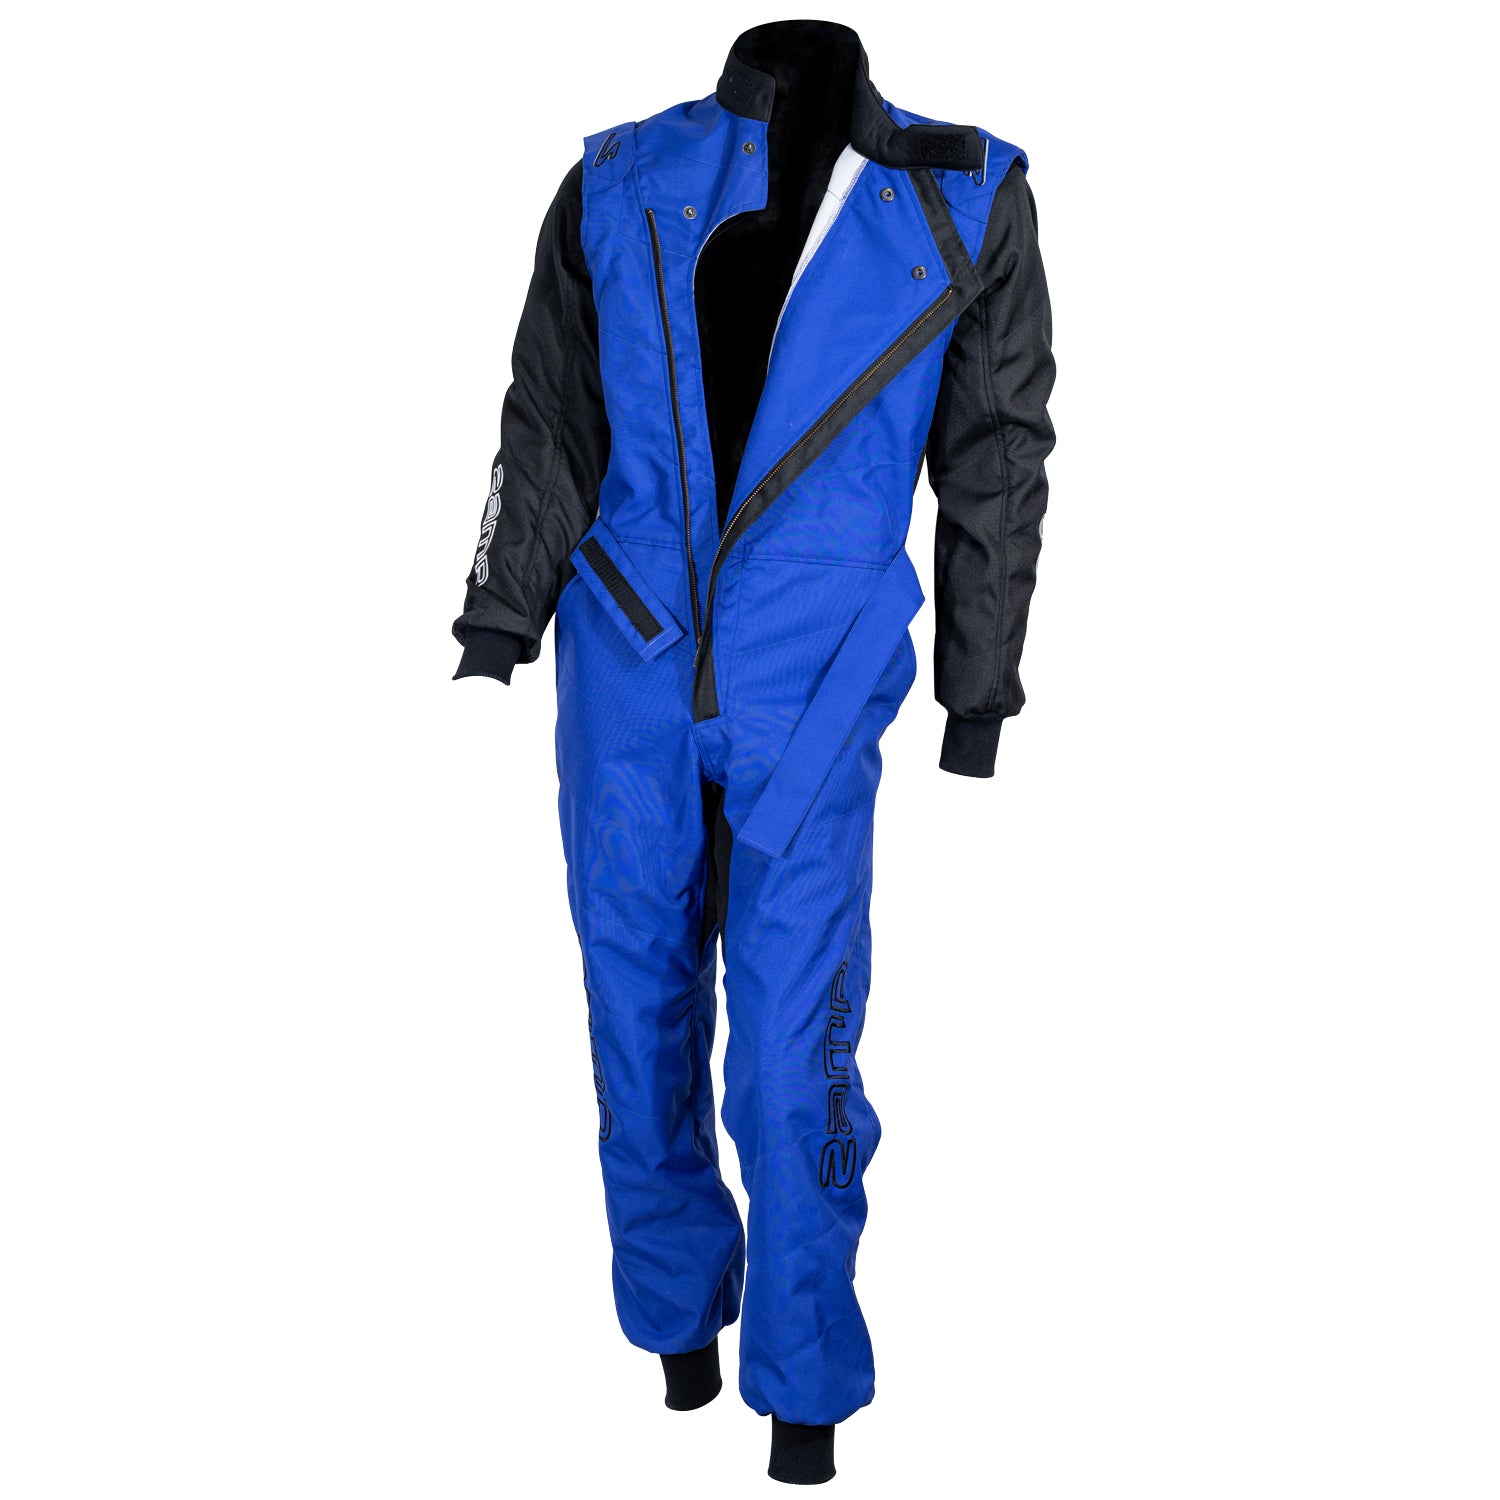 Zamp ZK-40 KART Race Suit, 3 color options